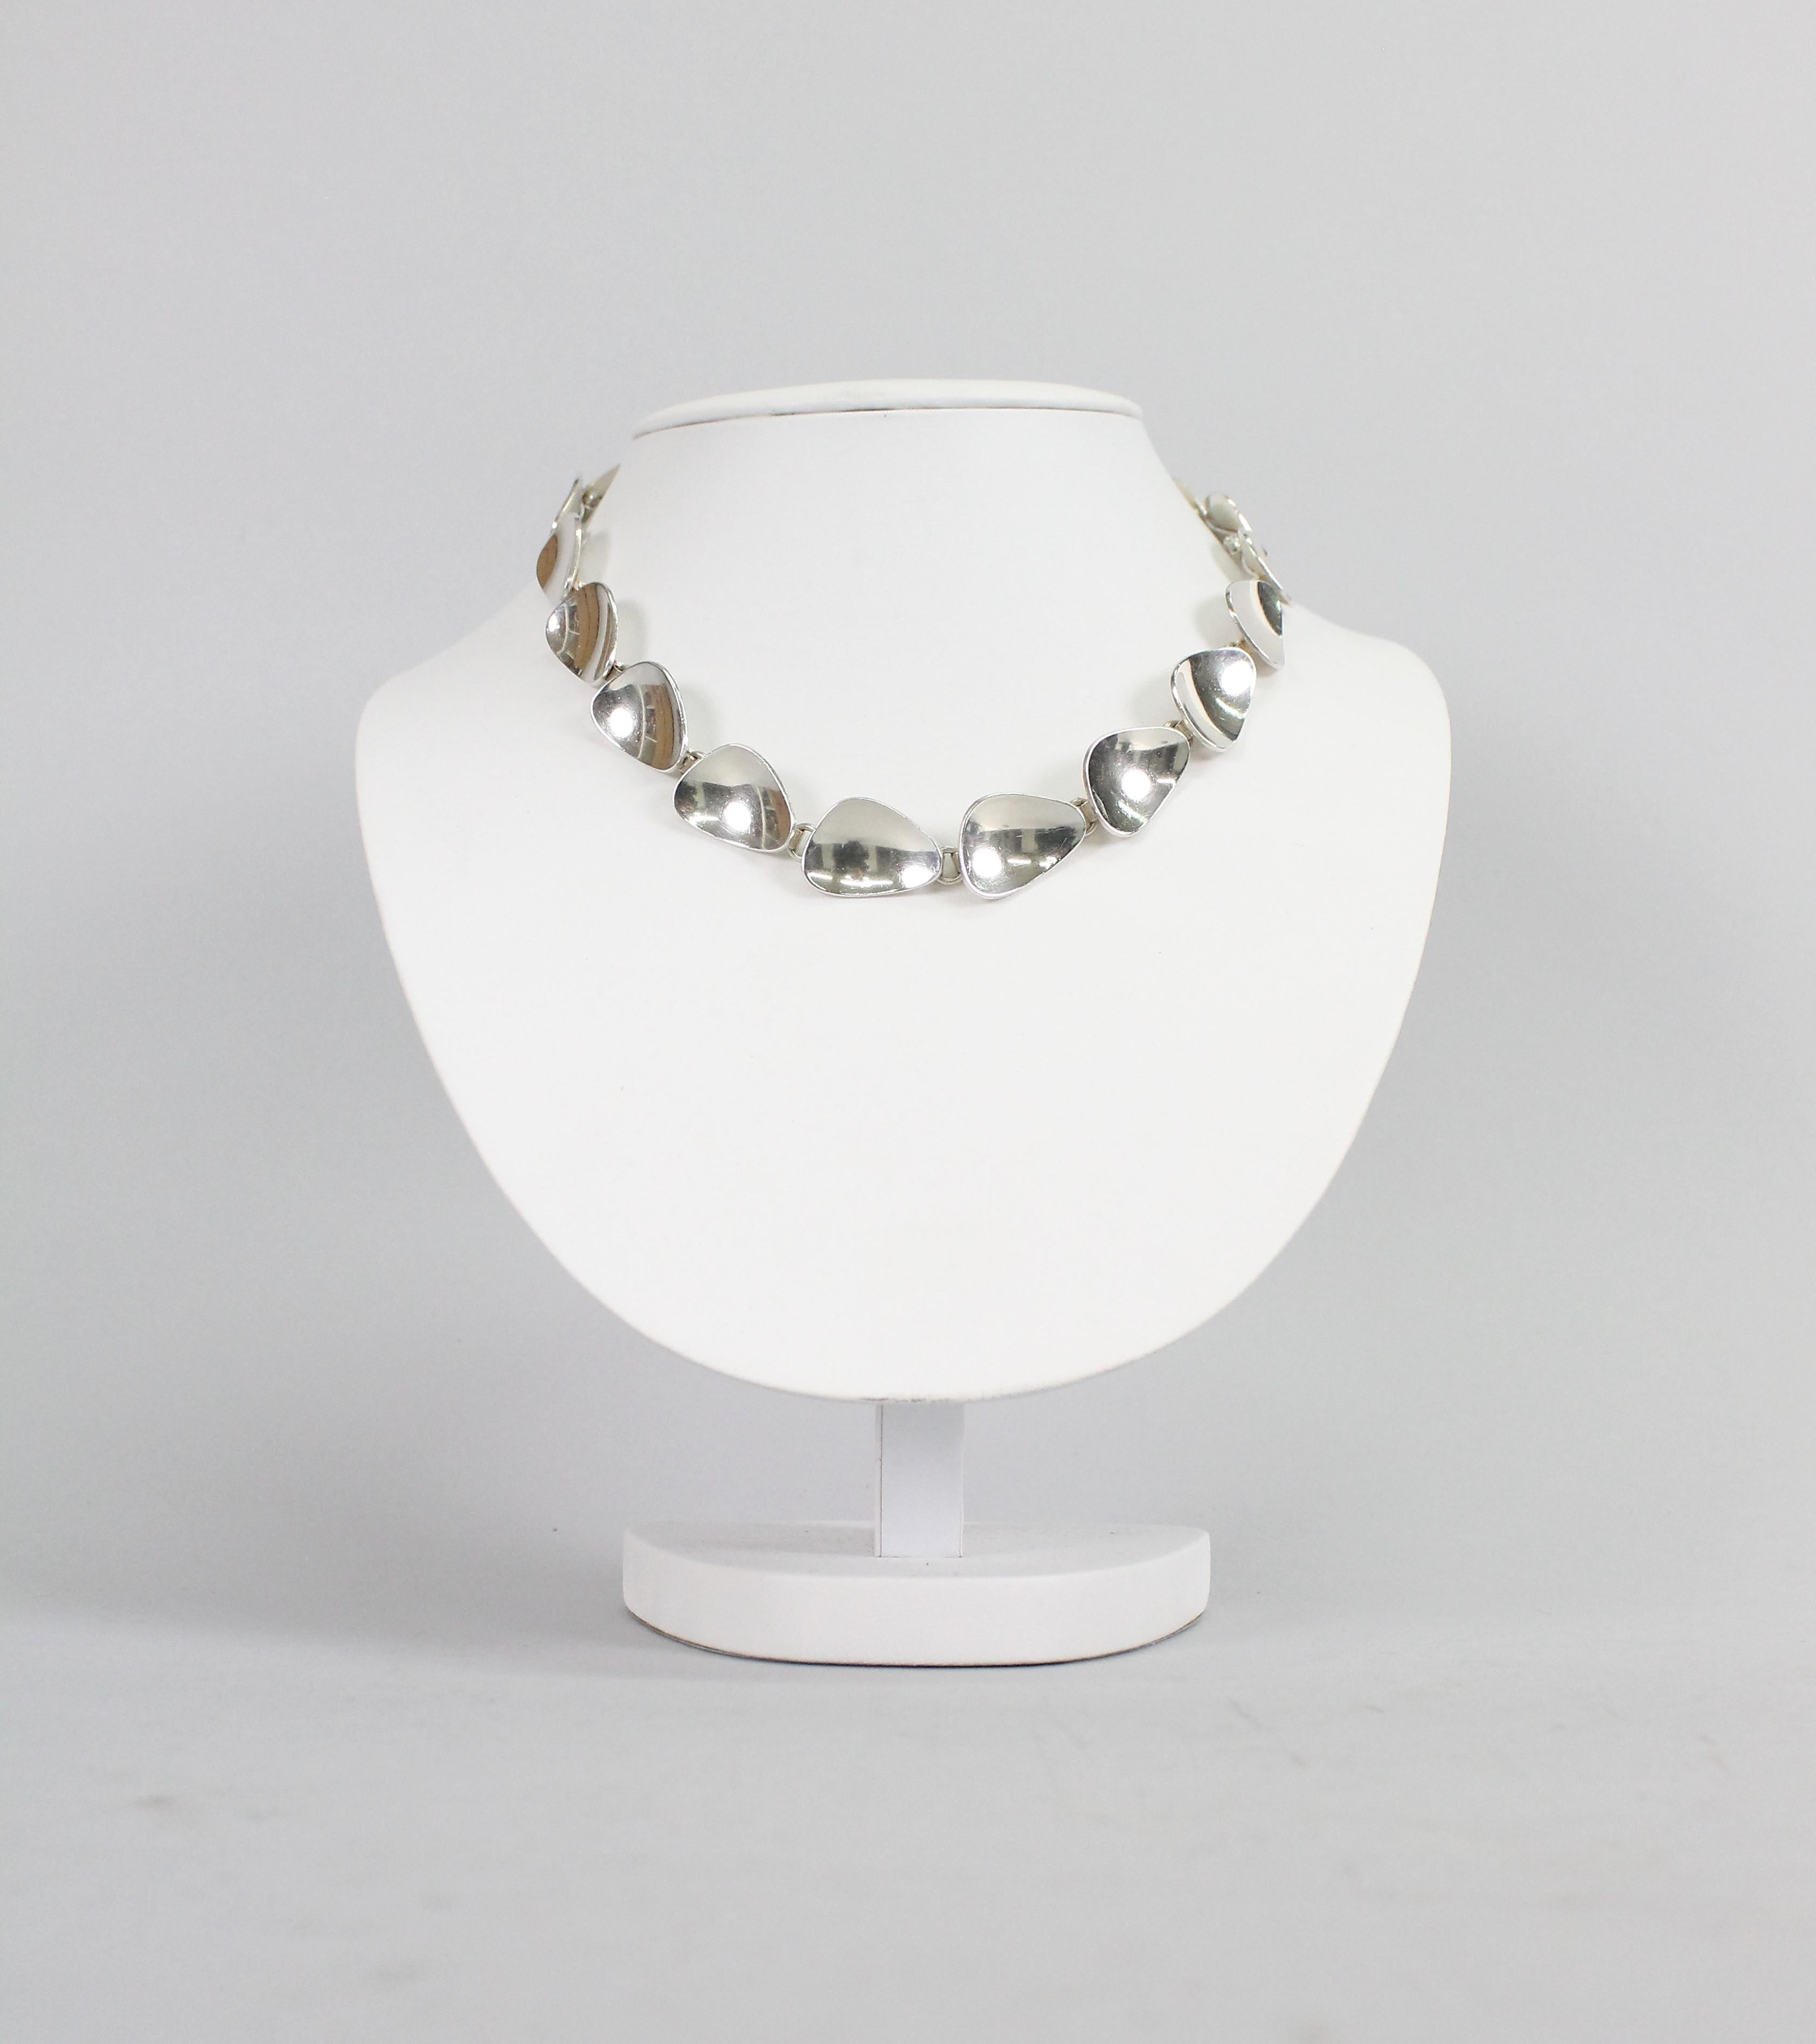 Modernist Silver Necklace by Michelsen, Stockholm, Sweden, 1954